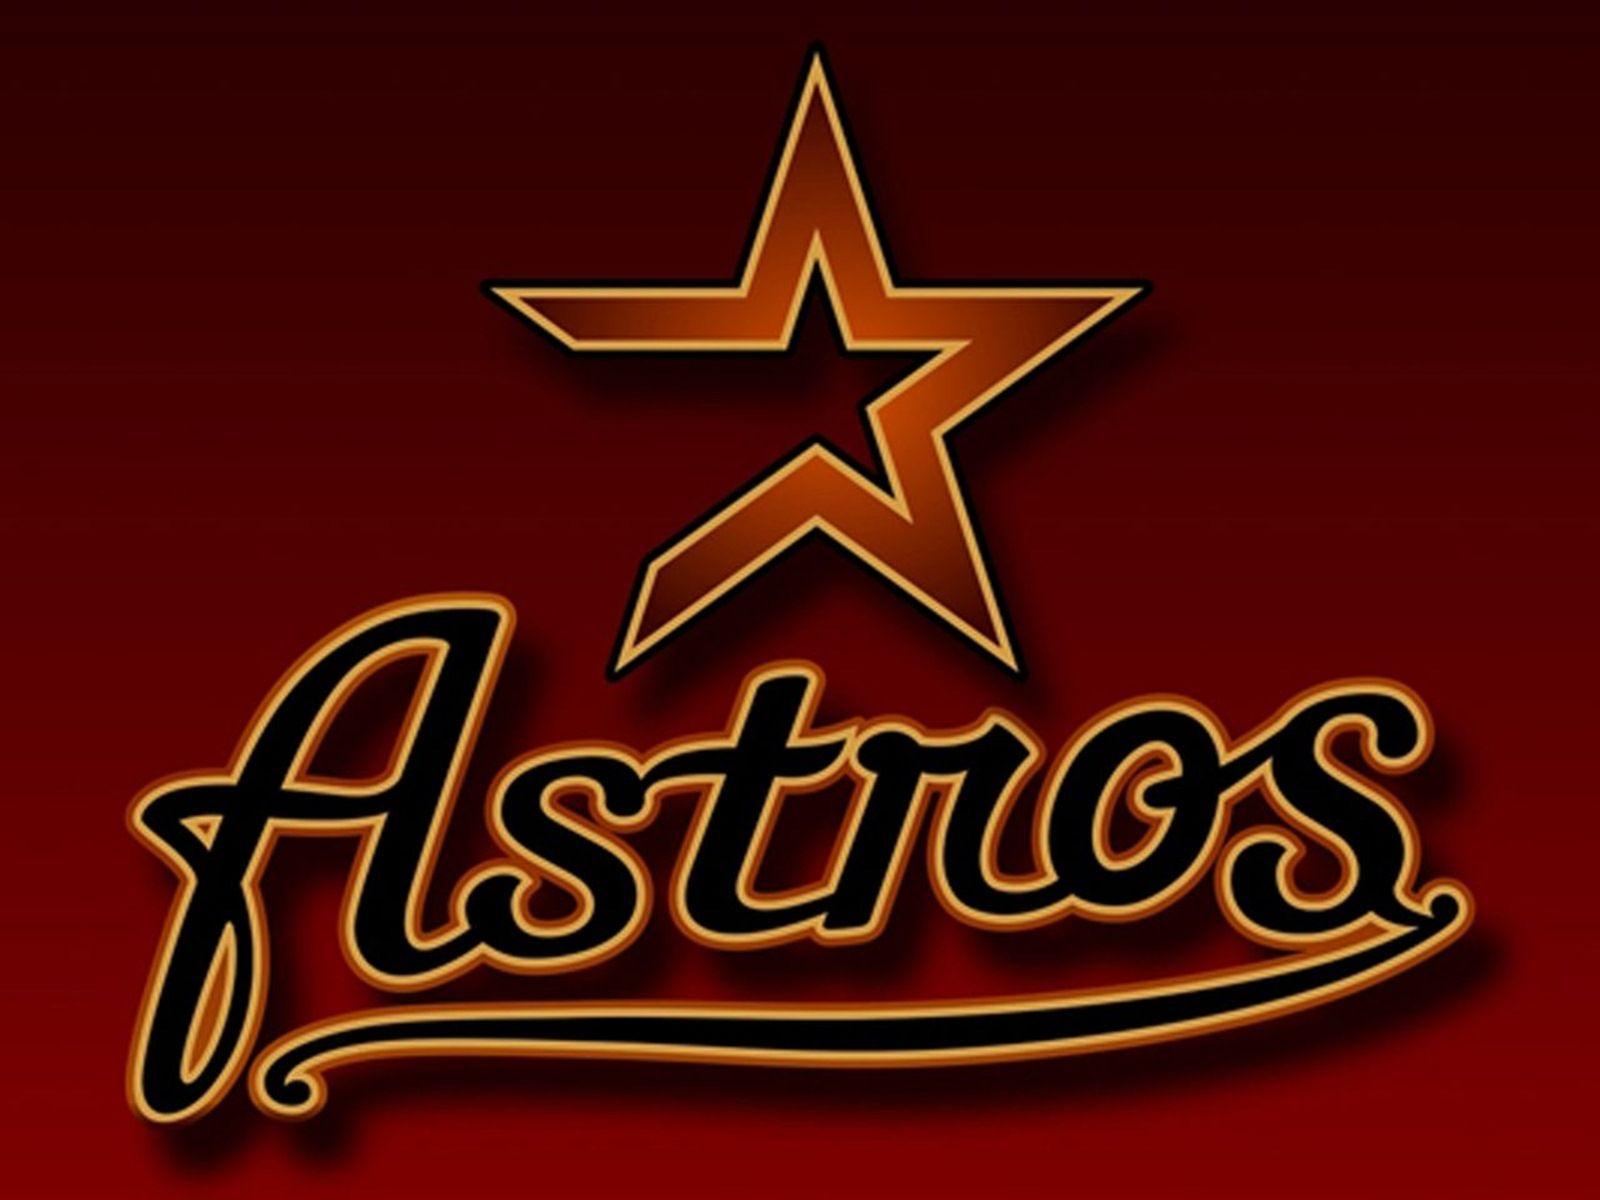 houston astros players. Houston Astros Team Logo Wallpaper. Free